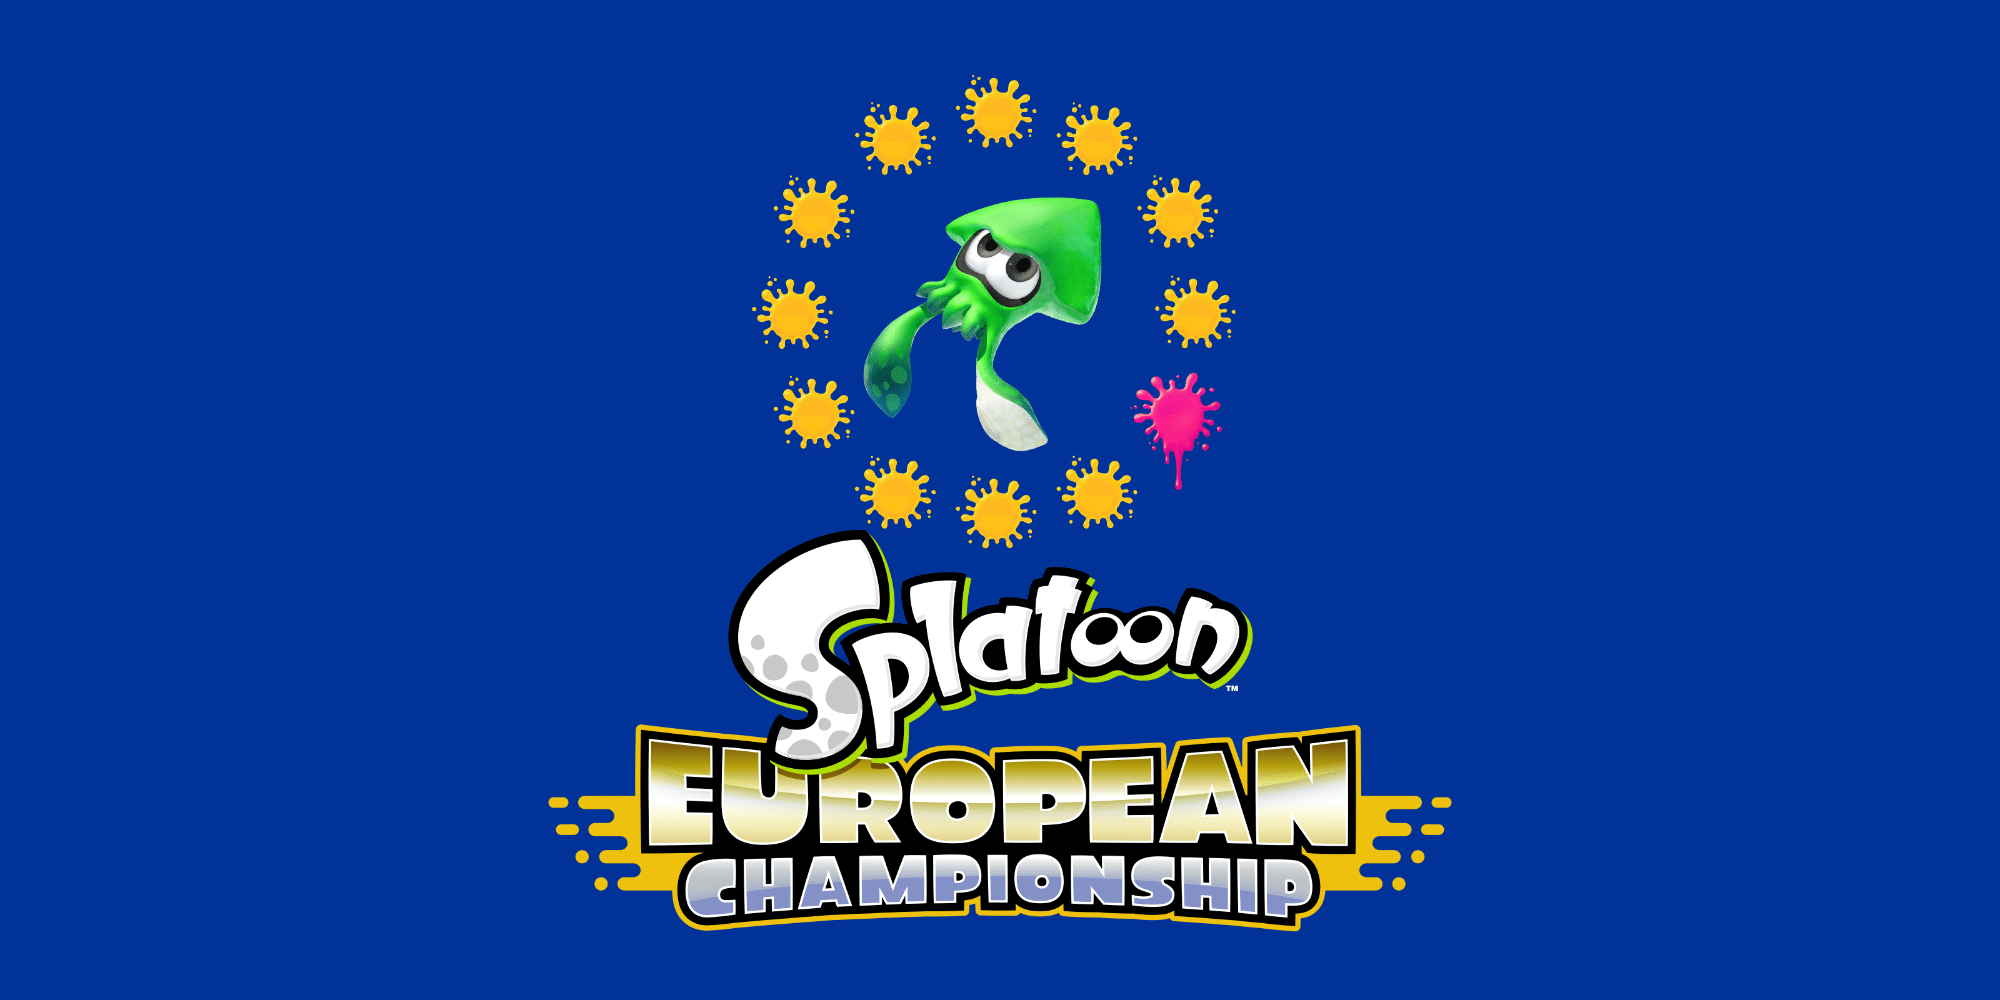 Splatoon European Championship,